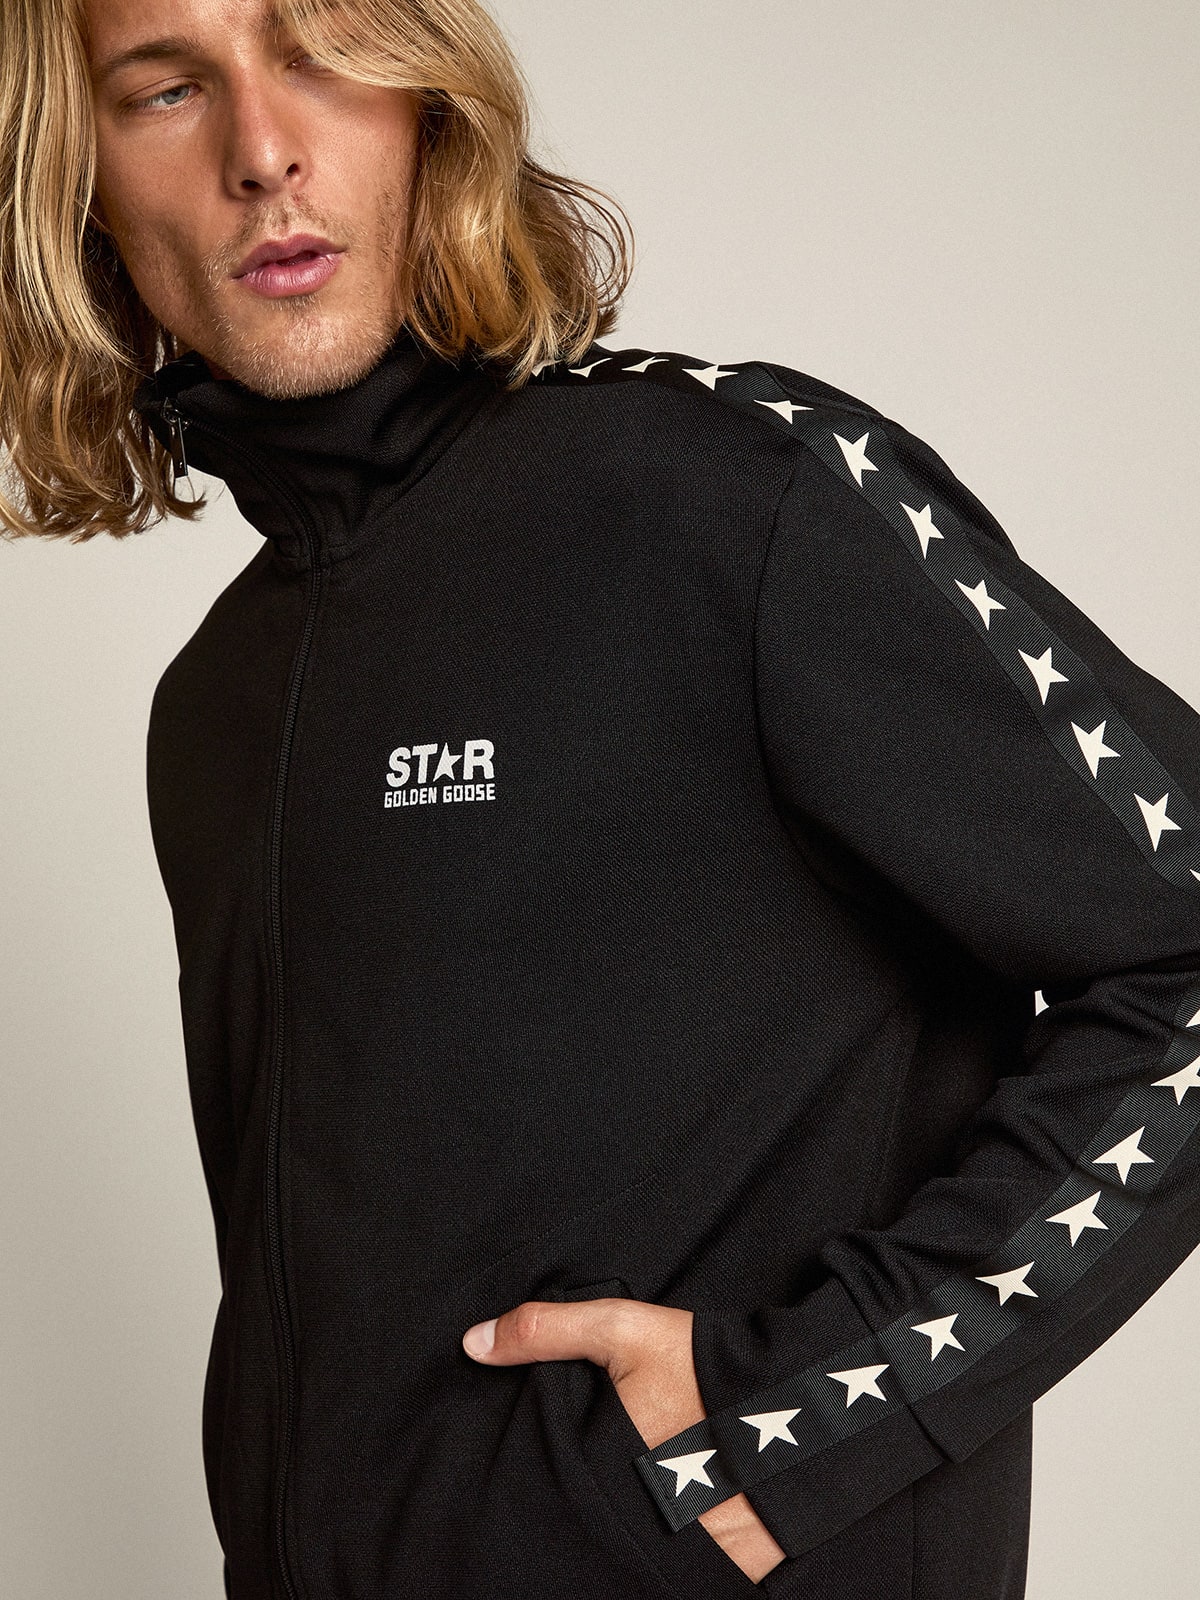 Golden Goose - Sweat-shirt zippé homme couleur noire avec étoiles blanches  in 